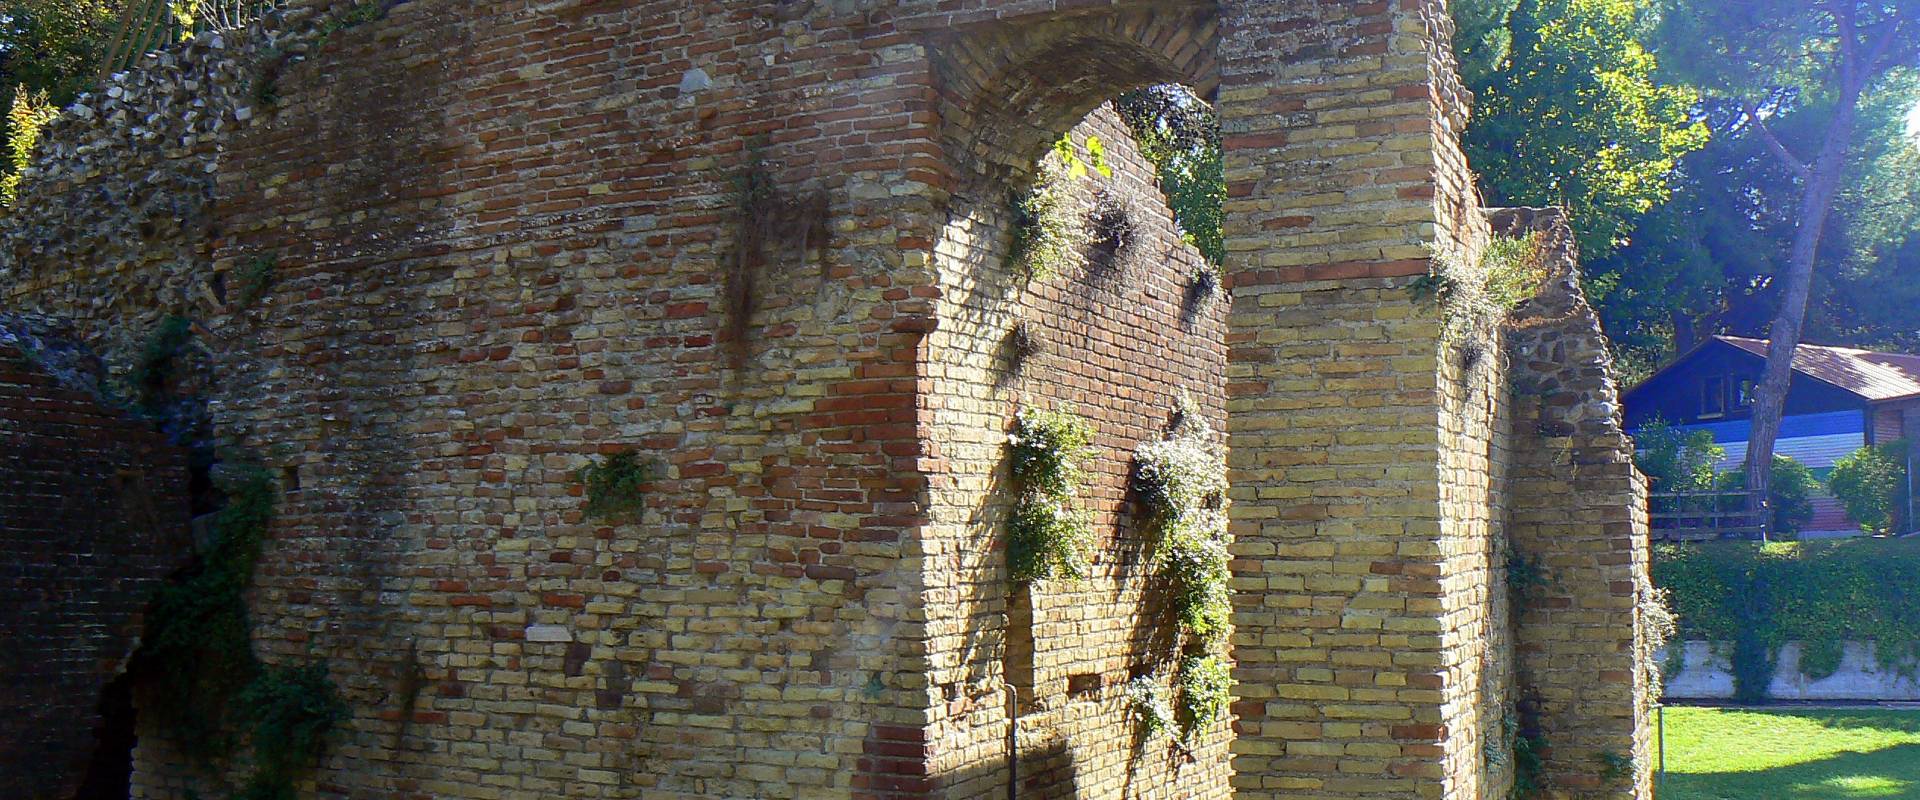 Particolare anfiteatro romano - Rimini 3 foto di Paperoastro